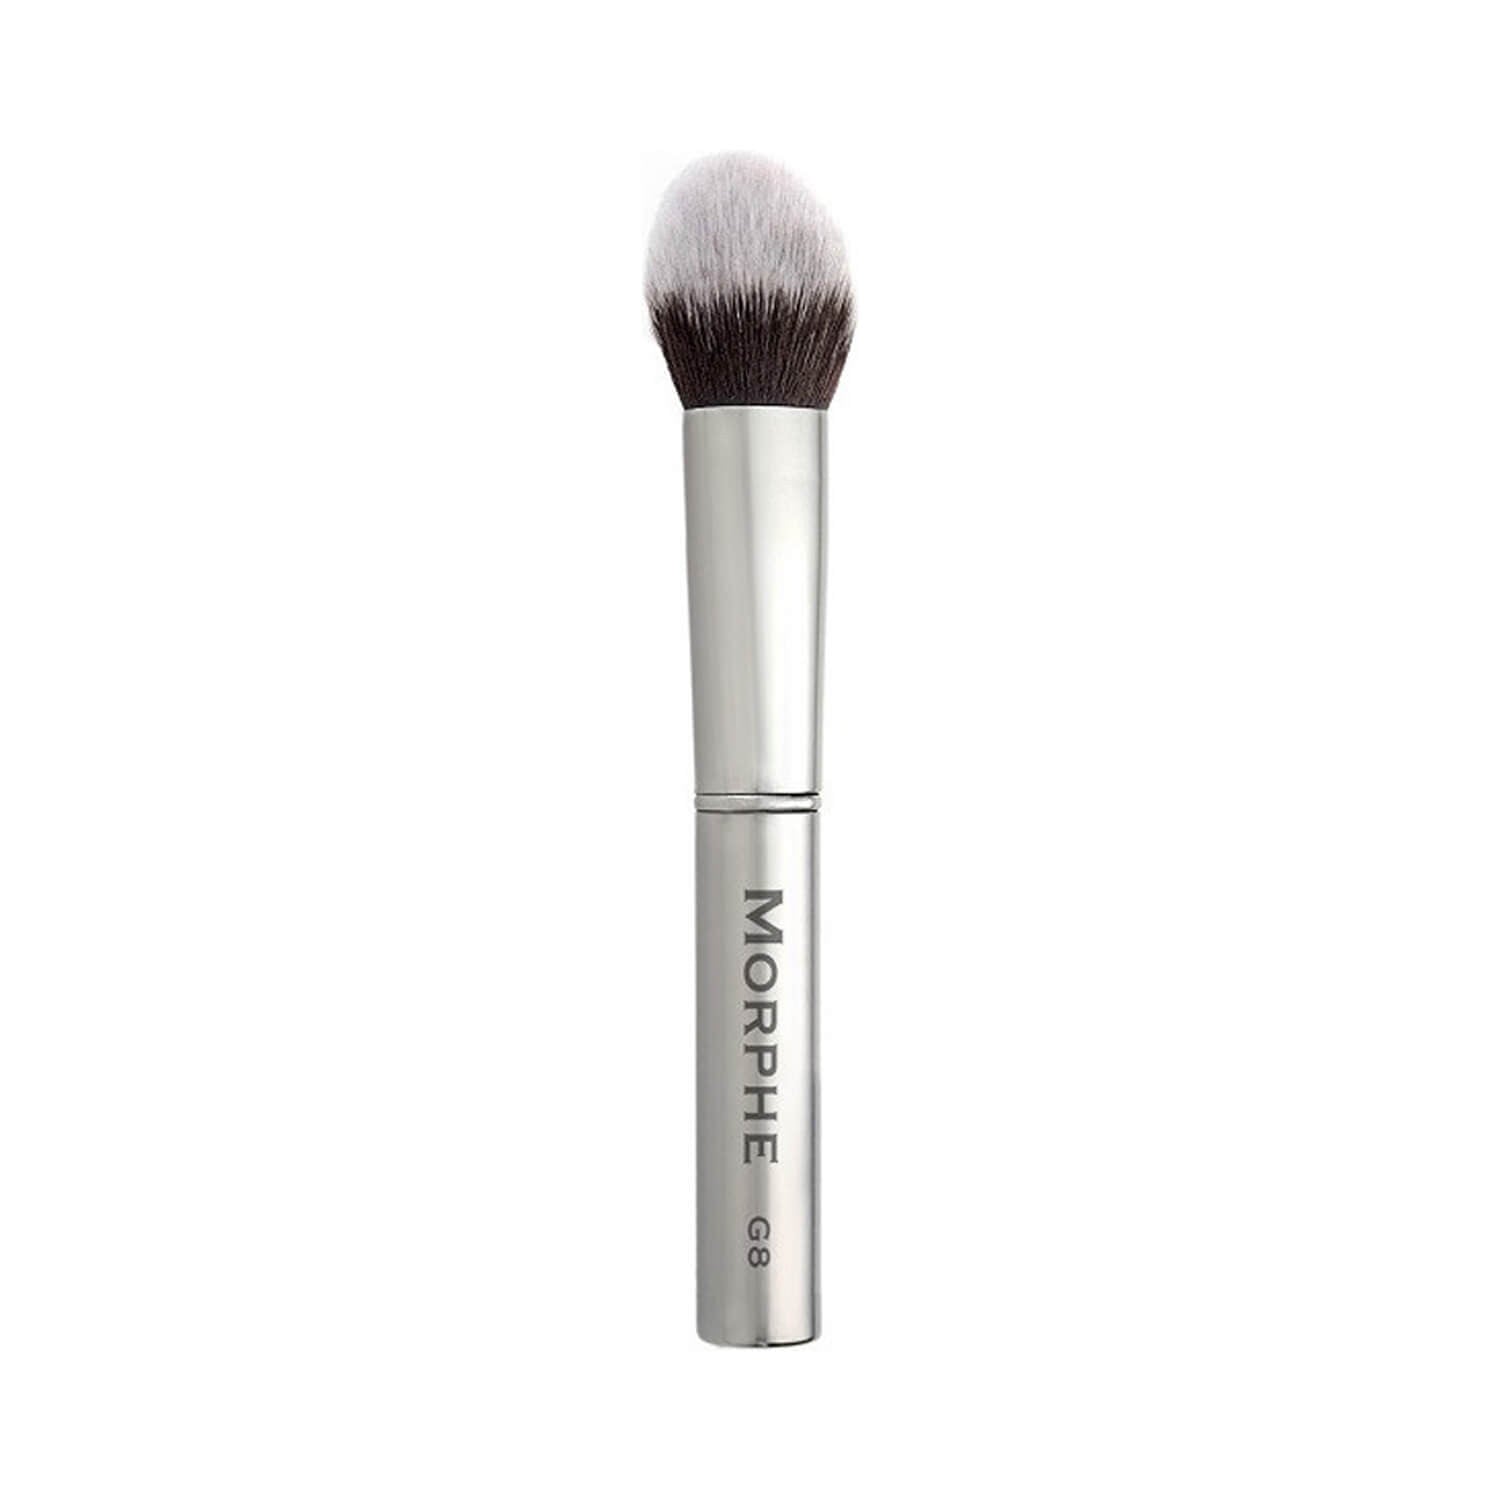 Morphe Cosmetics G8 Tapered Powder Blush Brush